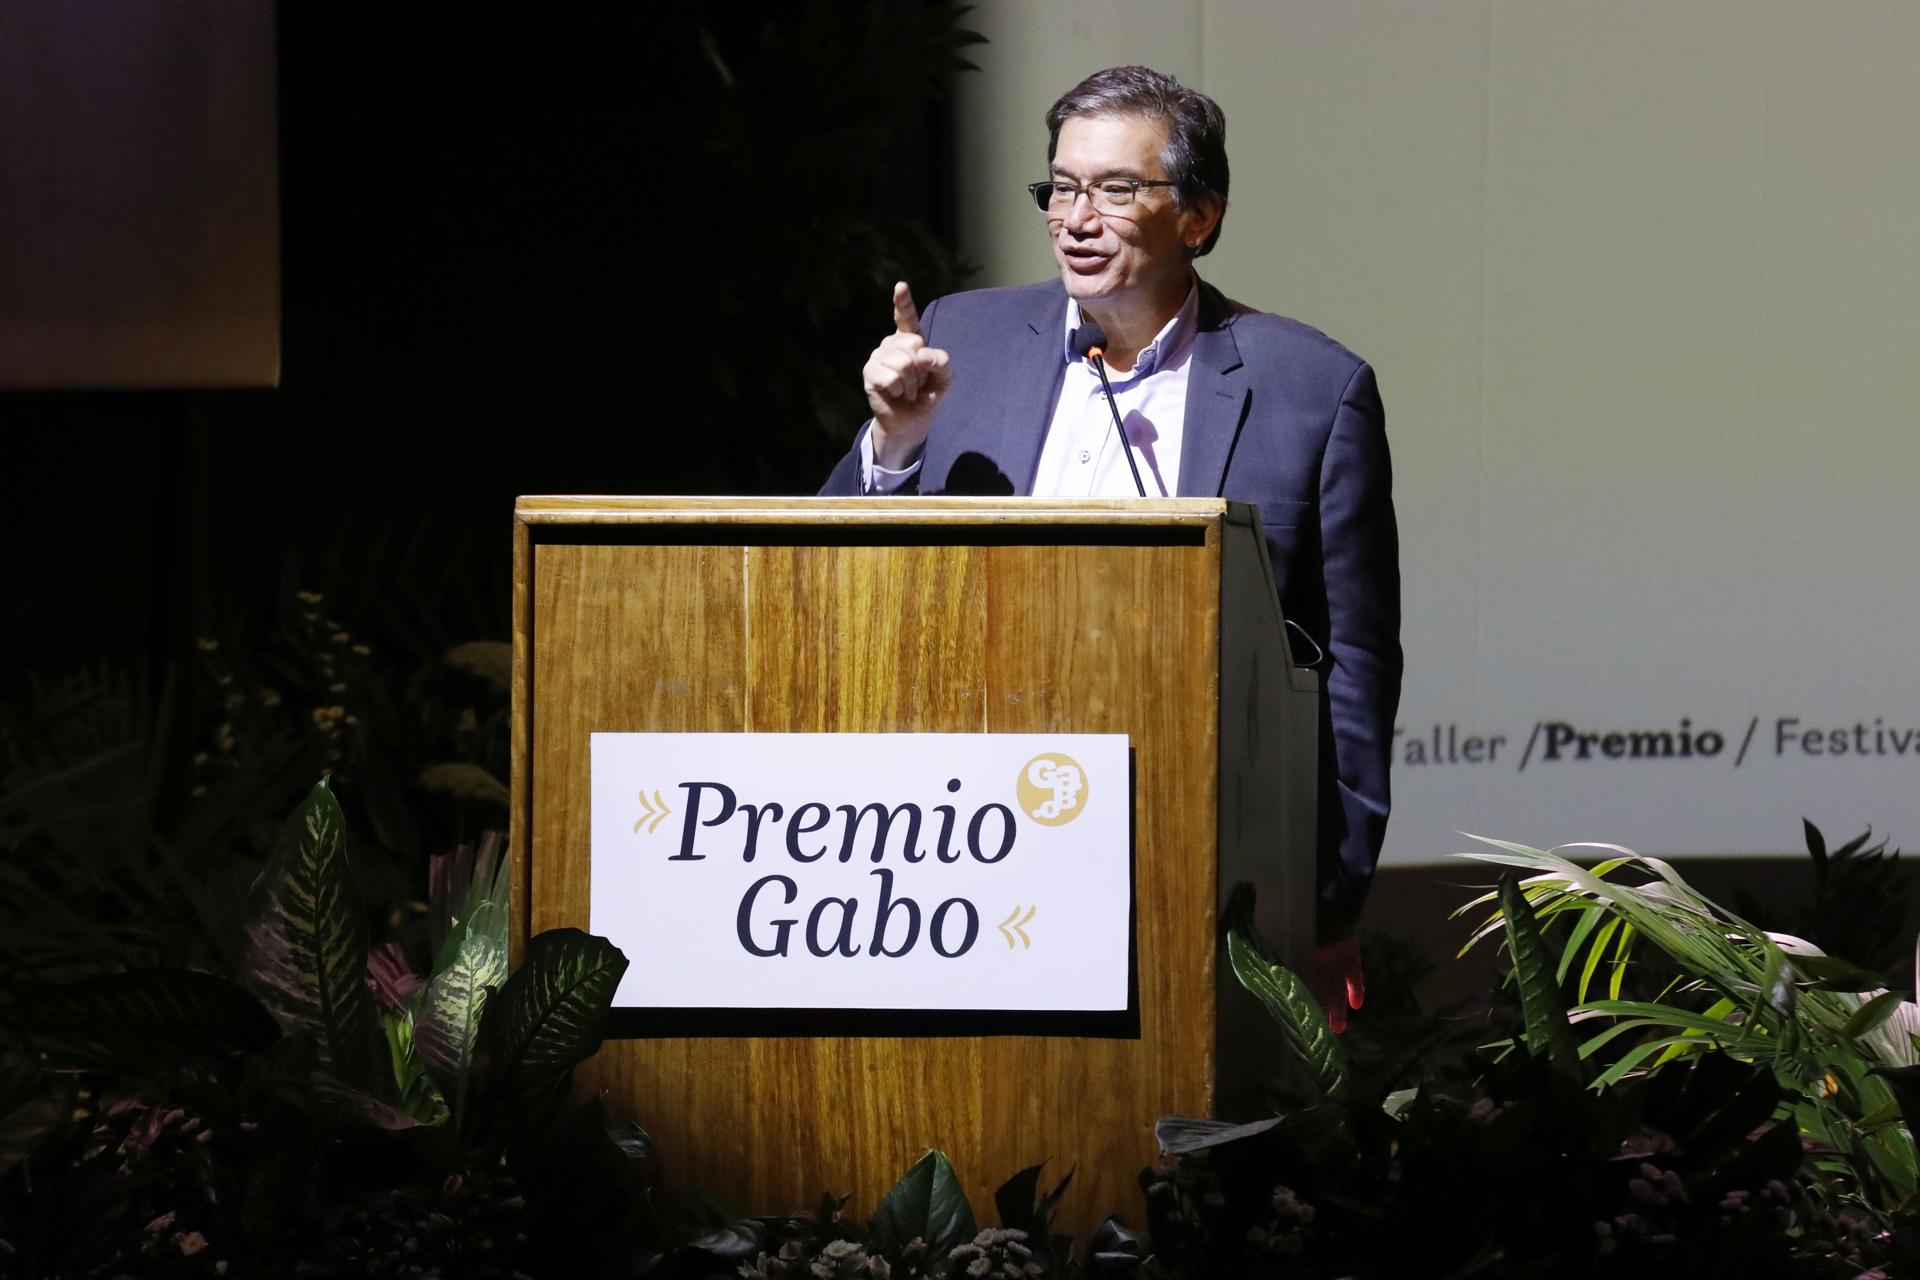 Trabajos periodísticos venezolanos, entre los 50 nominados al Premio Gabo